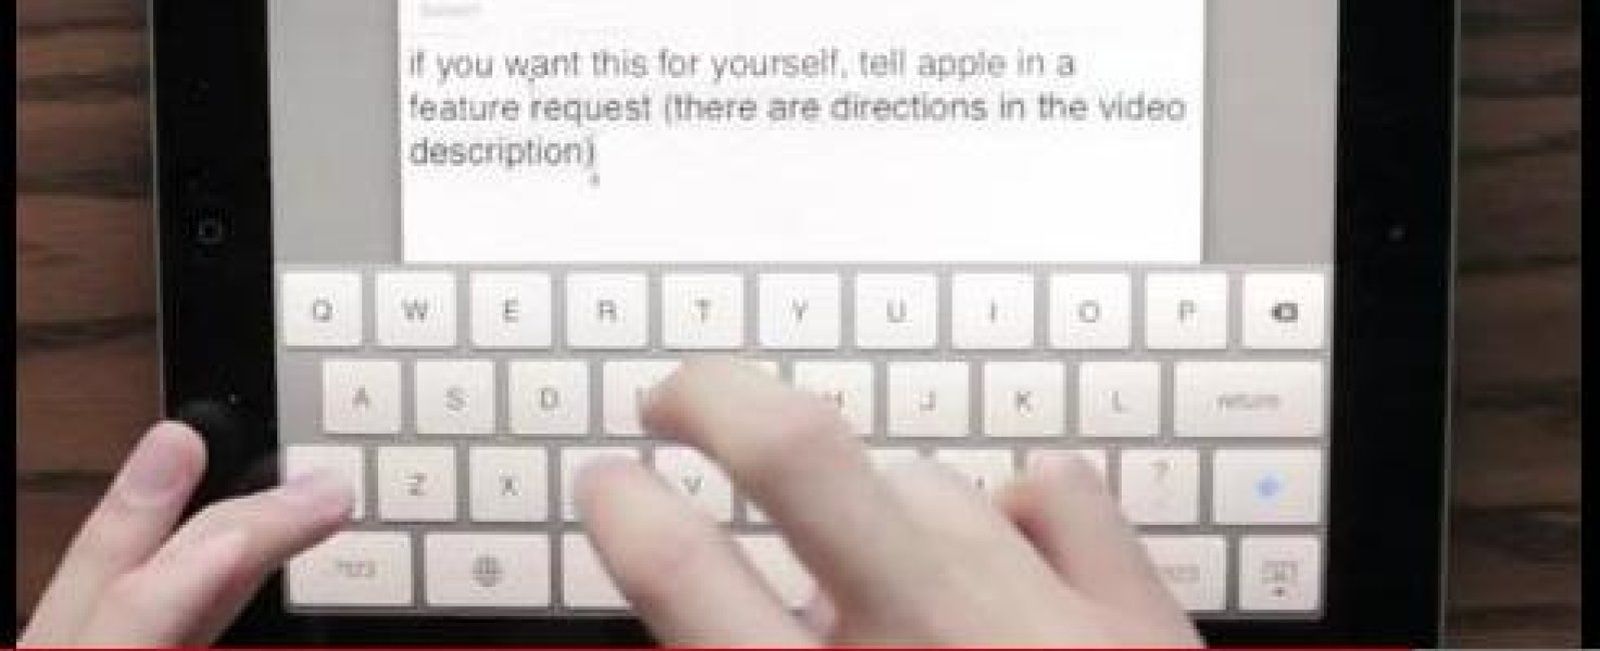 Foto: Un usuario revoluciona el teclado virtual del iPad